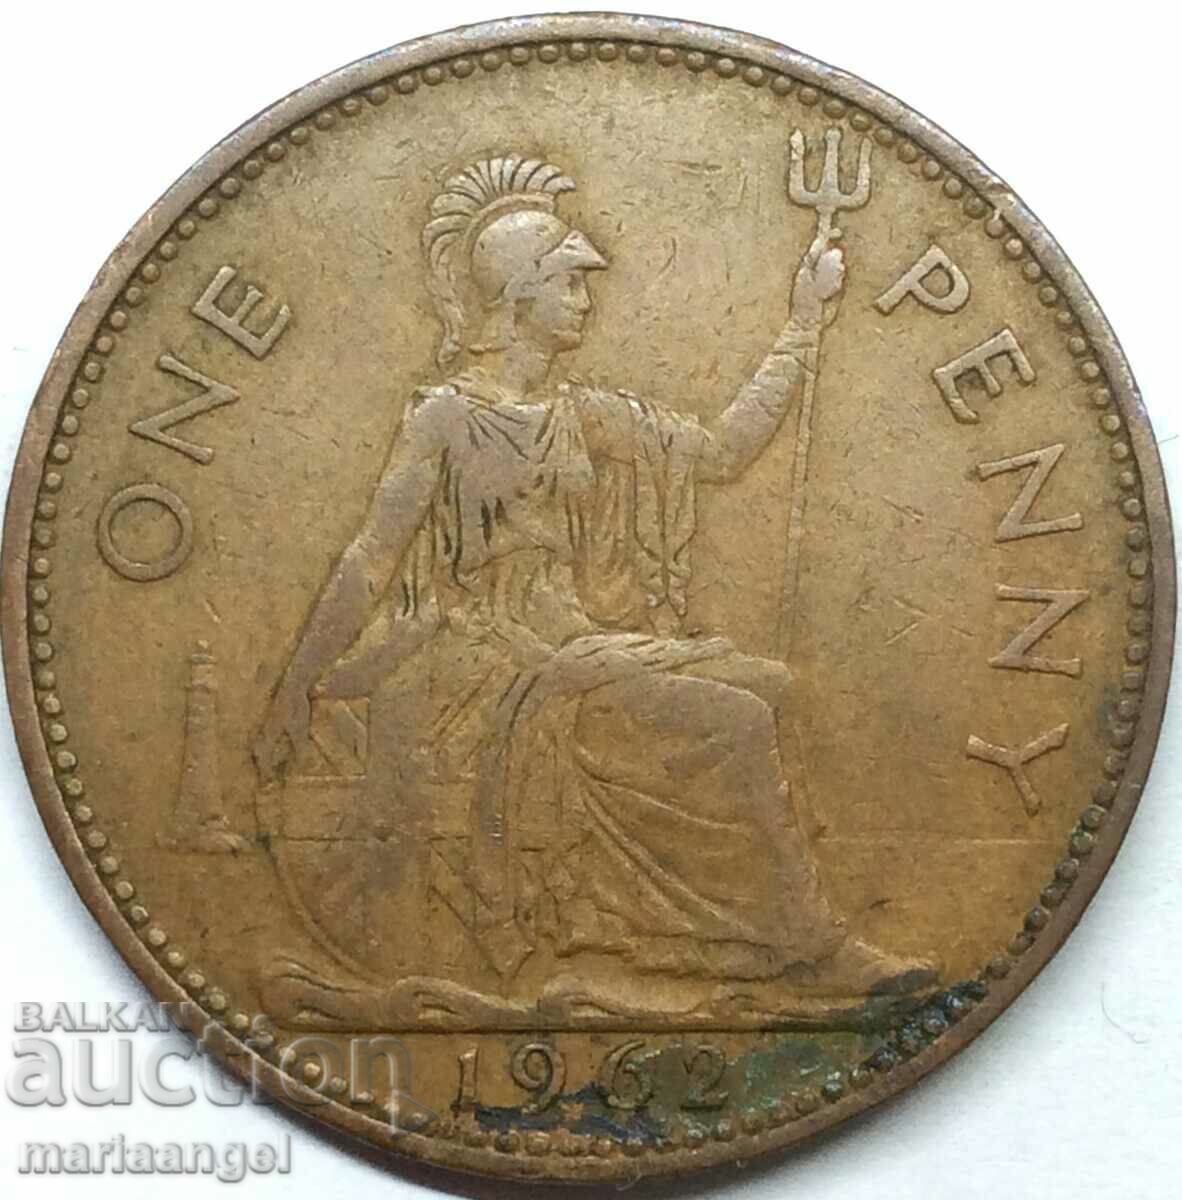 Μεγάλη Βρετανία 1 Penny 1962 30mm Χάλκινο 2